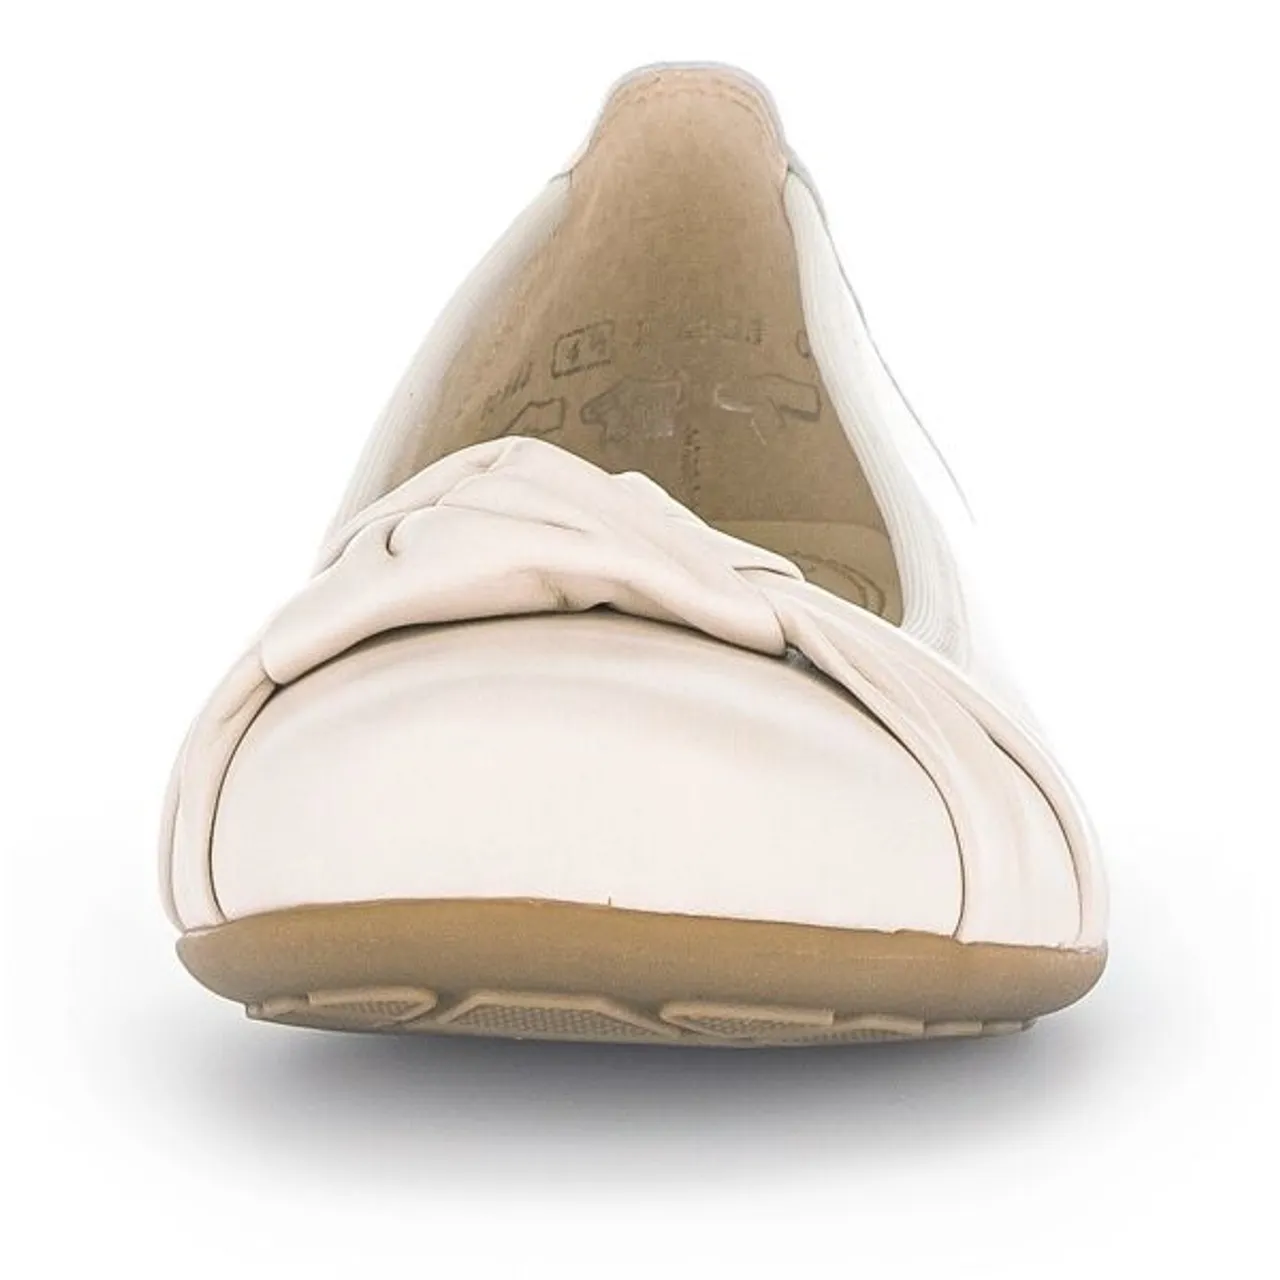 Ballerina GABOR "FLORENZ" Gr. 39, weiß (offwhite) Damen Schuhe Ballerinas